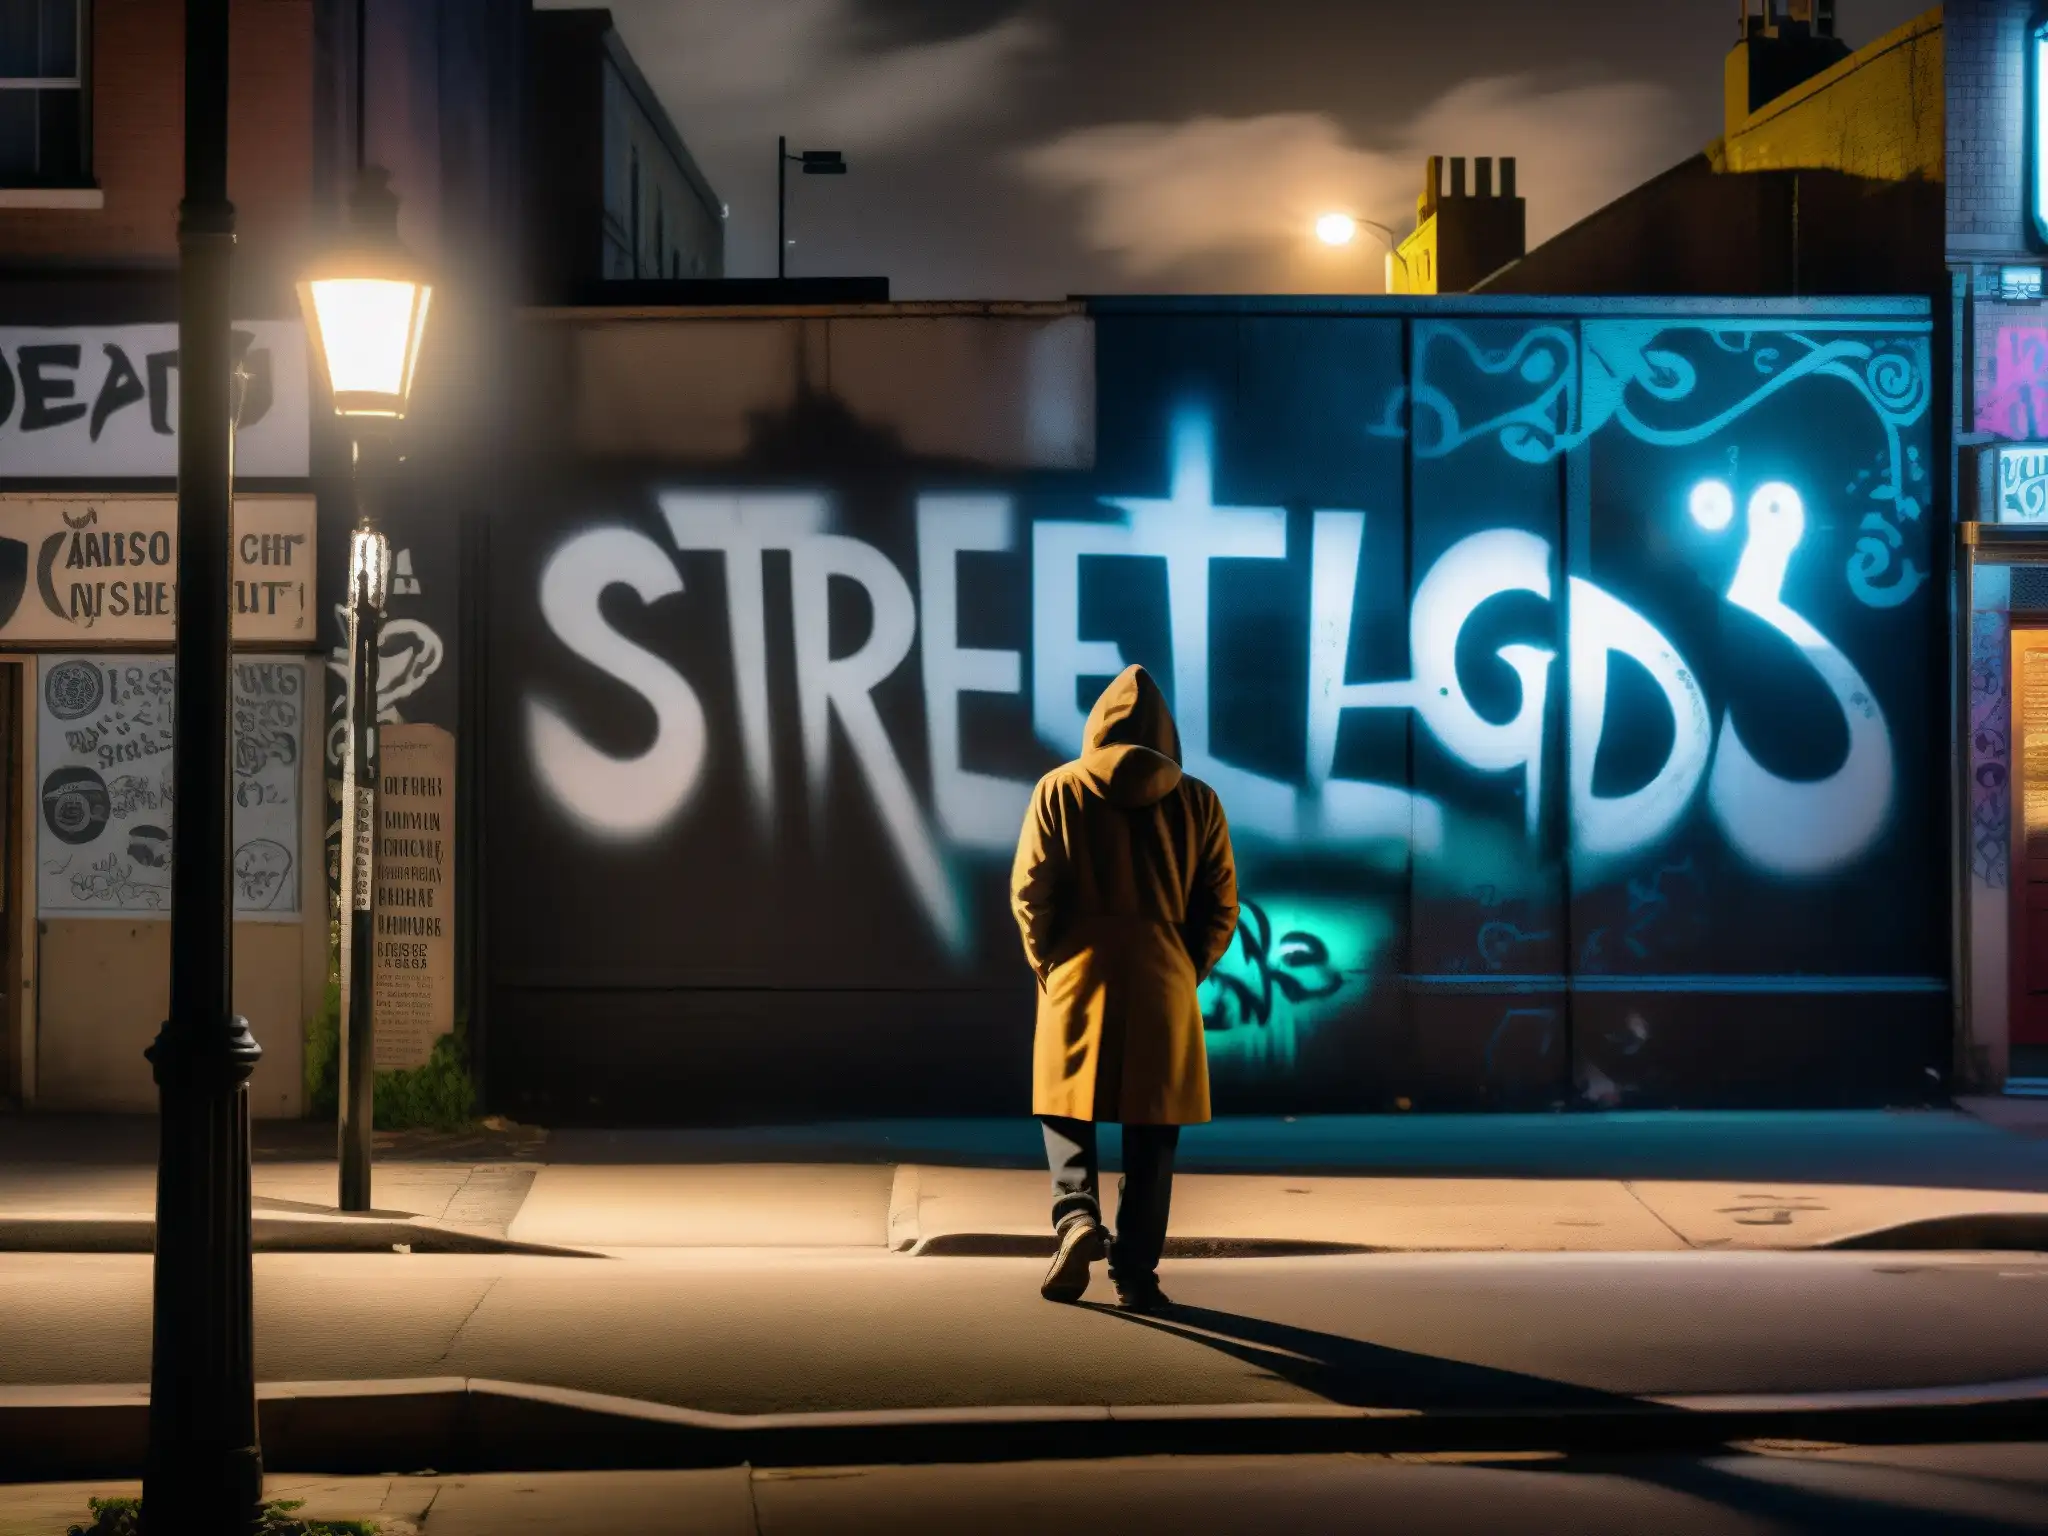 Una calle de la ciudad iluminada tenue, con una figura misteriosa bajo una farola parpadeante, rodeada de grafitis y carteles de leyendas urbanas